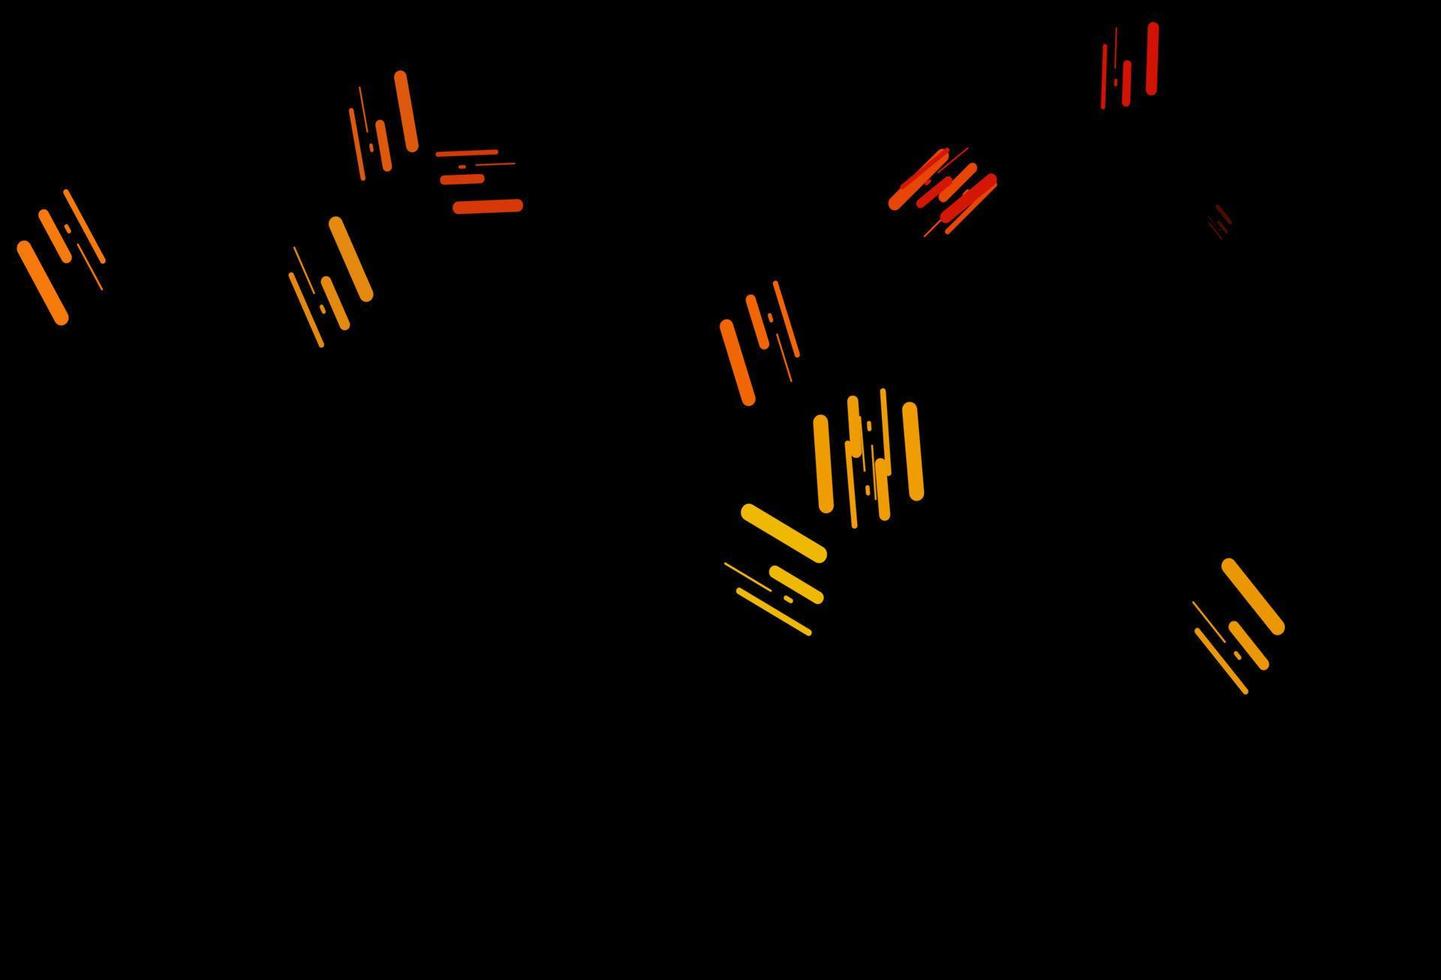 modèle vectoriel orange foncé avec des bâtons répétés.